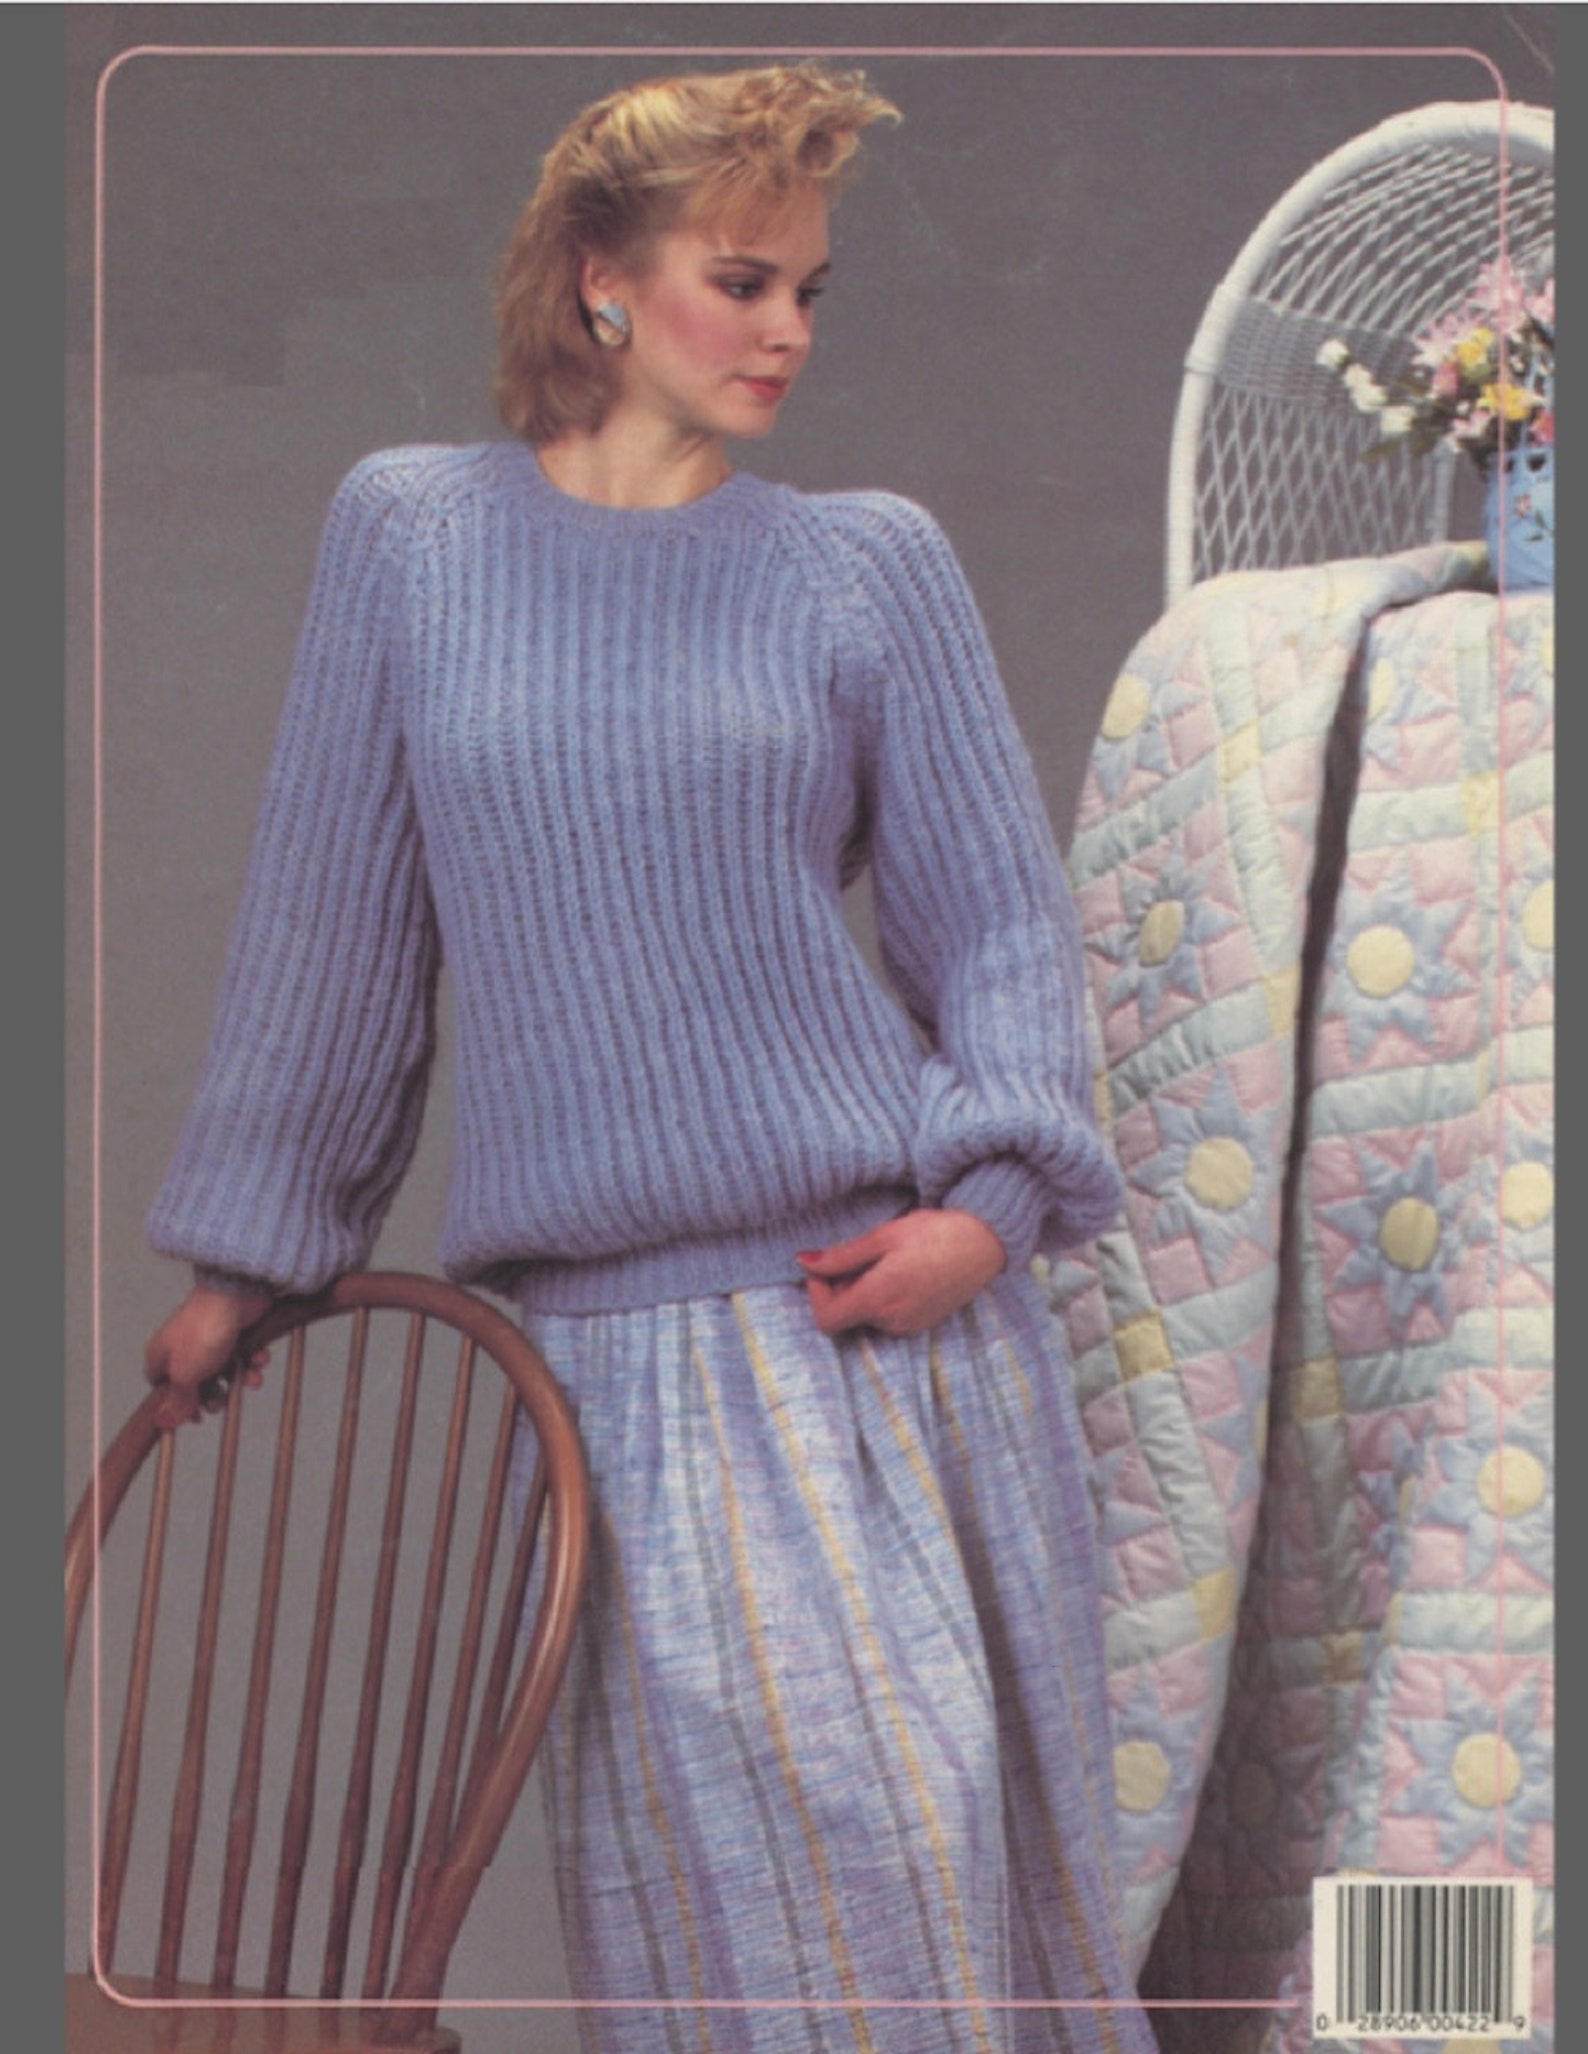 1986 Shaker Stitch Sweaters Knitting Patterns Leisure Arts | Etsy